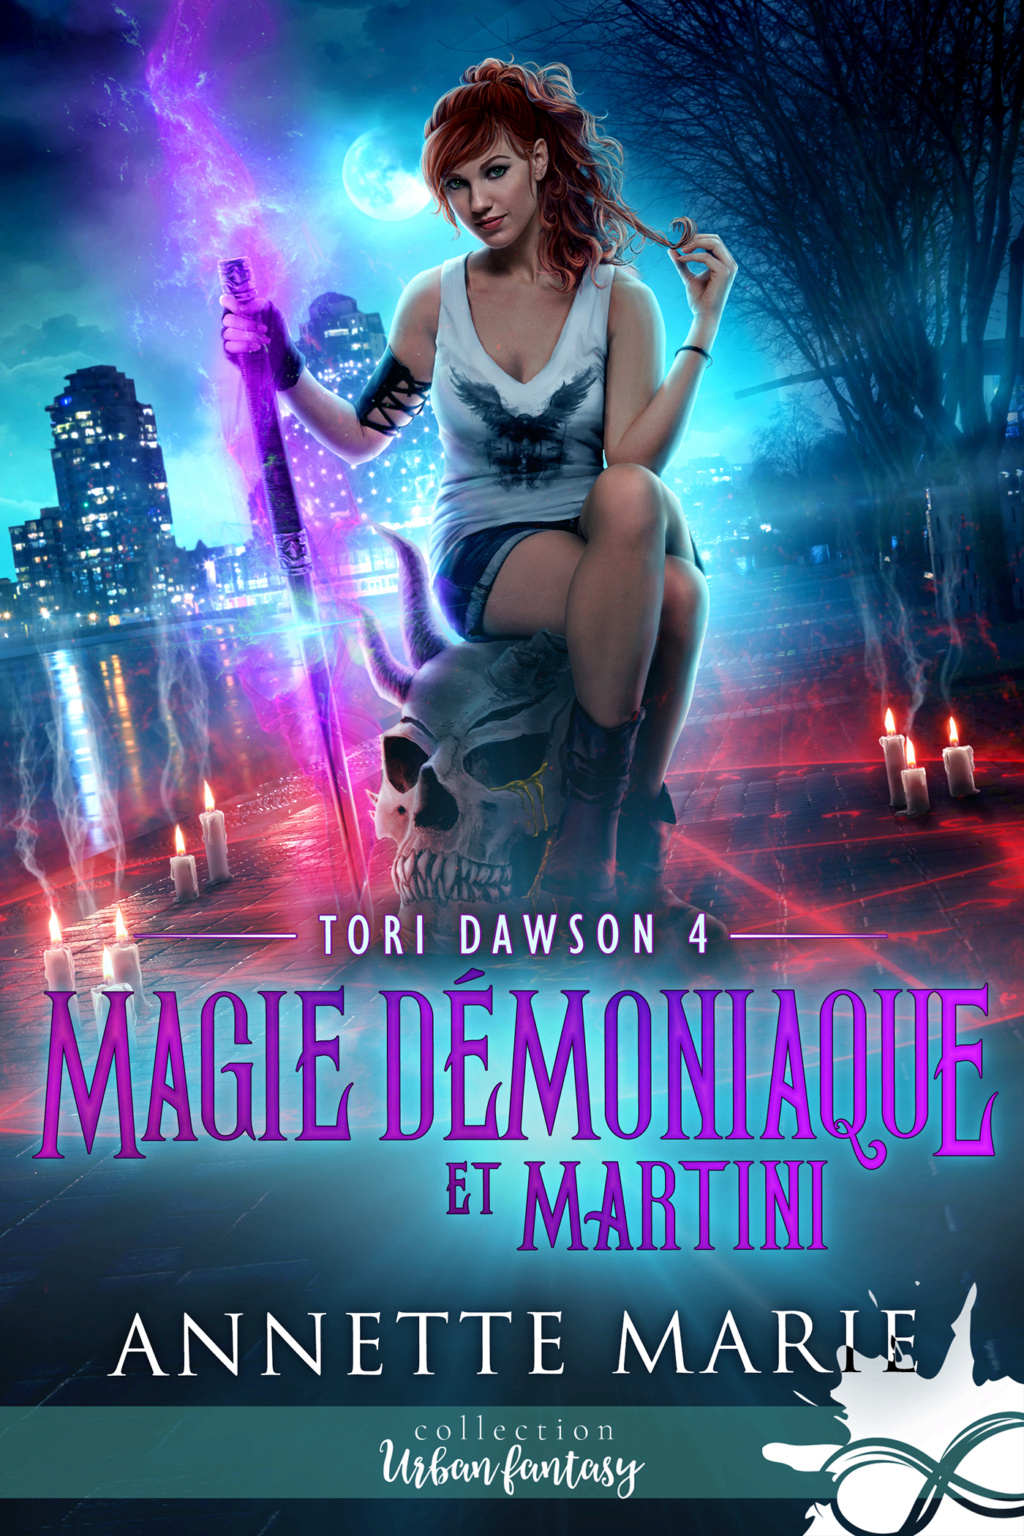 Tori Dawson - Tome 4 : Magie démoniaque et martini d'Annette Marie Ccf36810